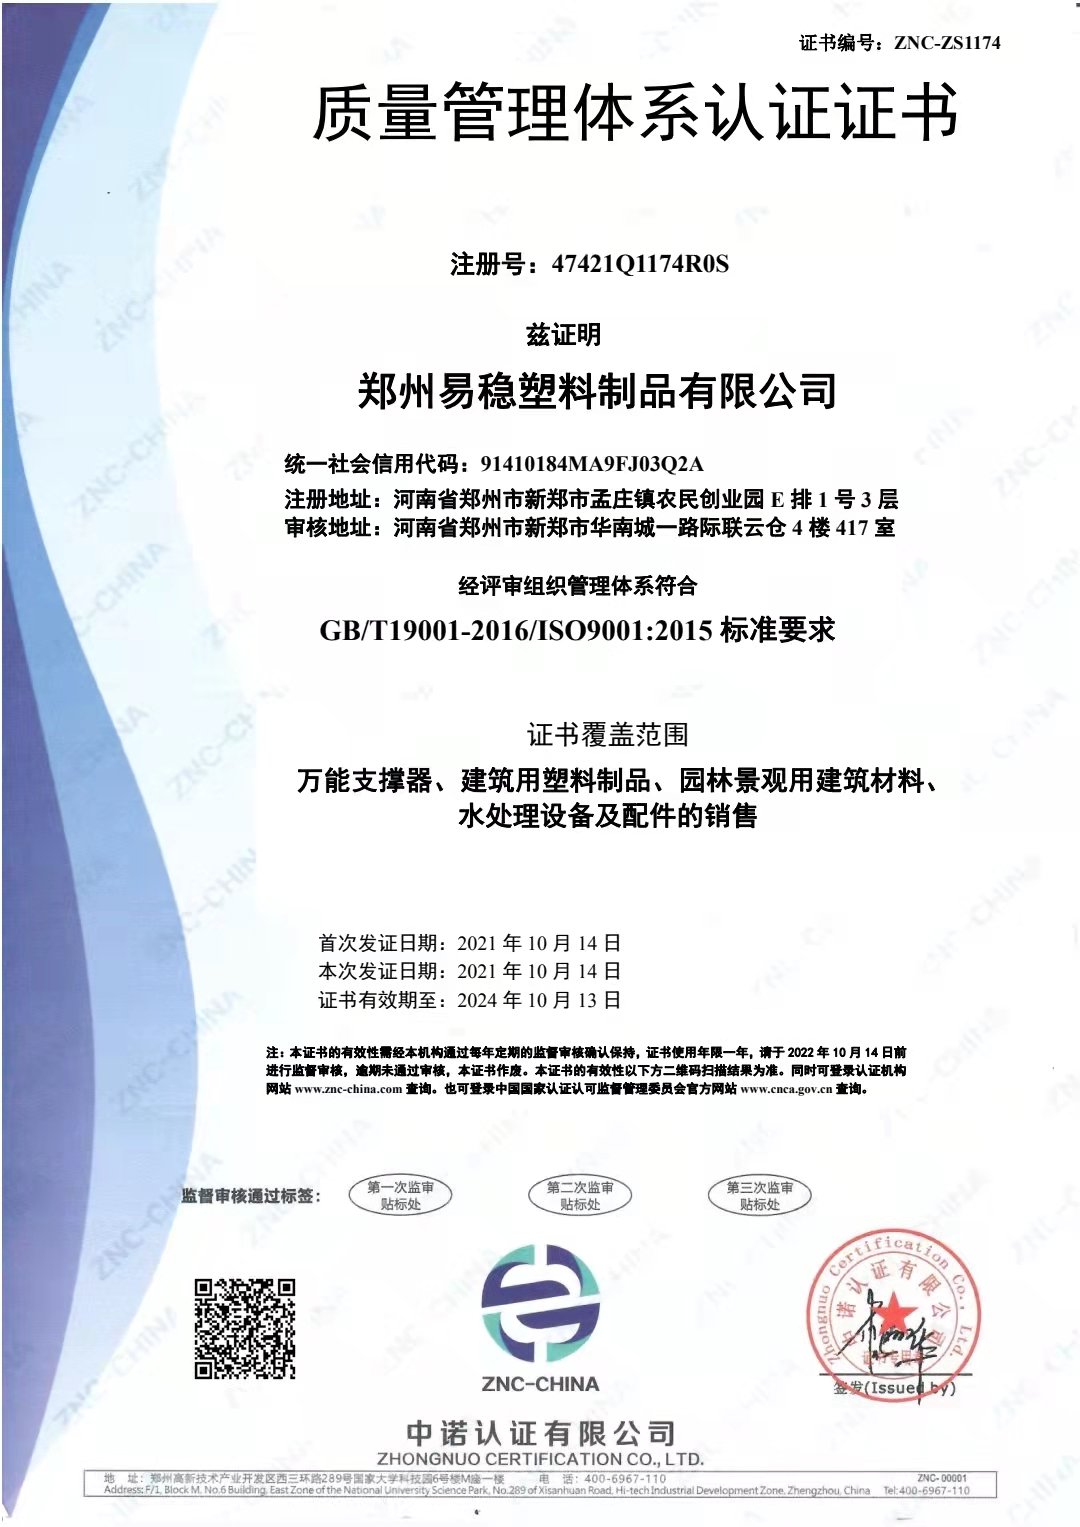 郑州易稳塑料制品有限公司质量管理体系证书